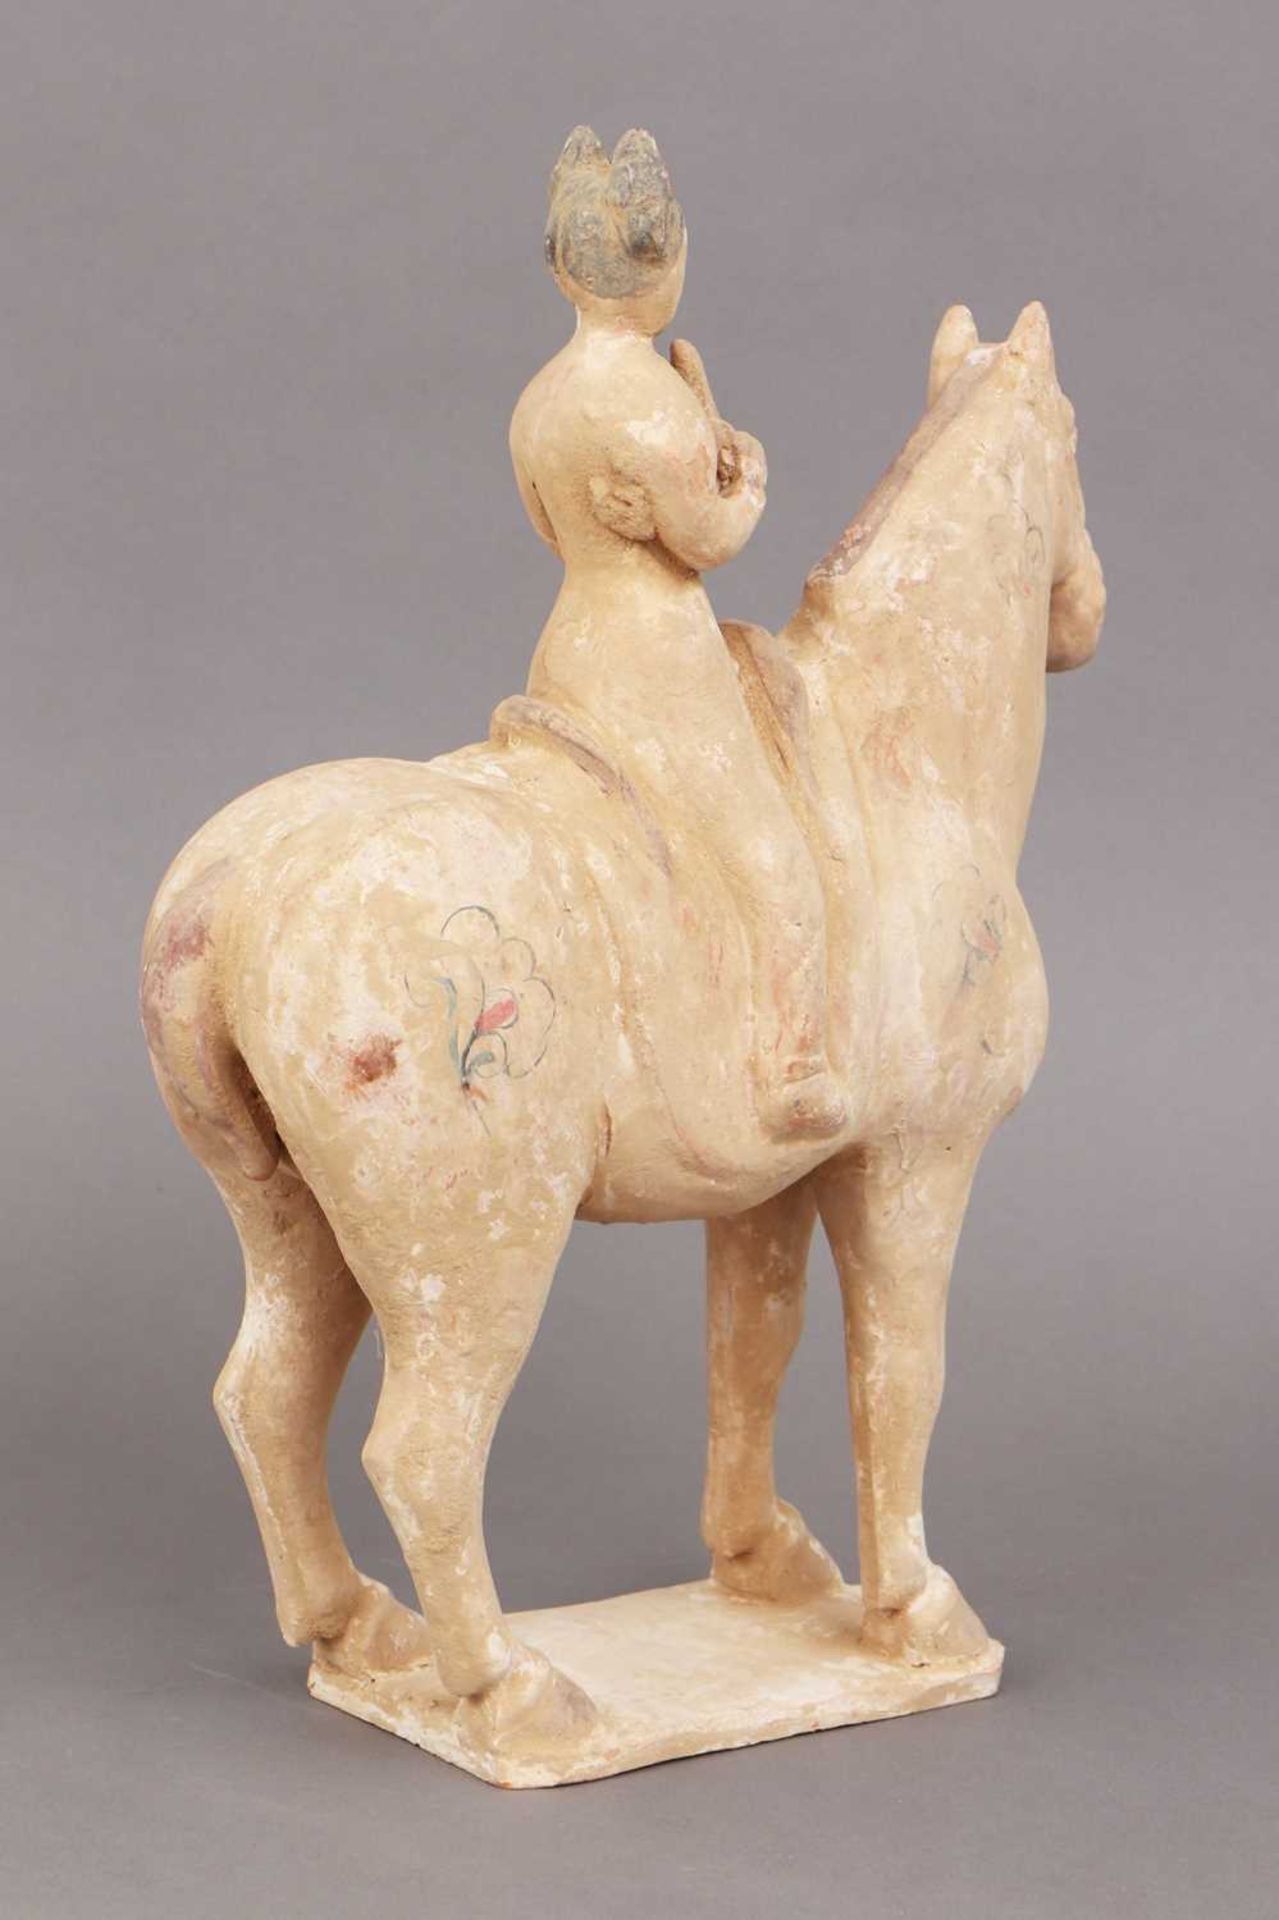 Chinesische Terrakotta-Figur im Stile der Tang-Dynastie ¨"Pferd mit Reiterin¨" - Bild 2 aus 2